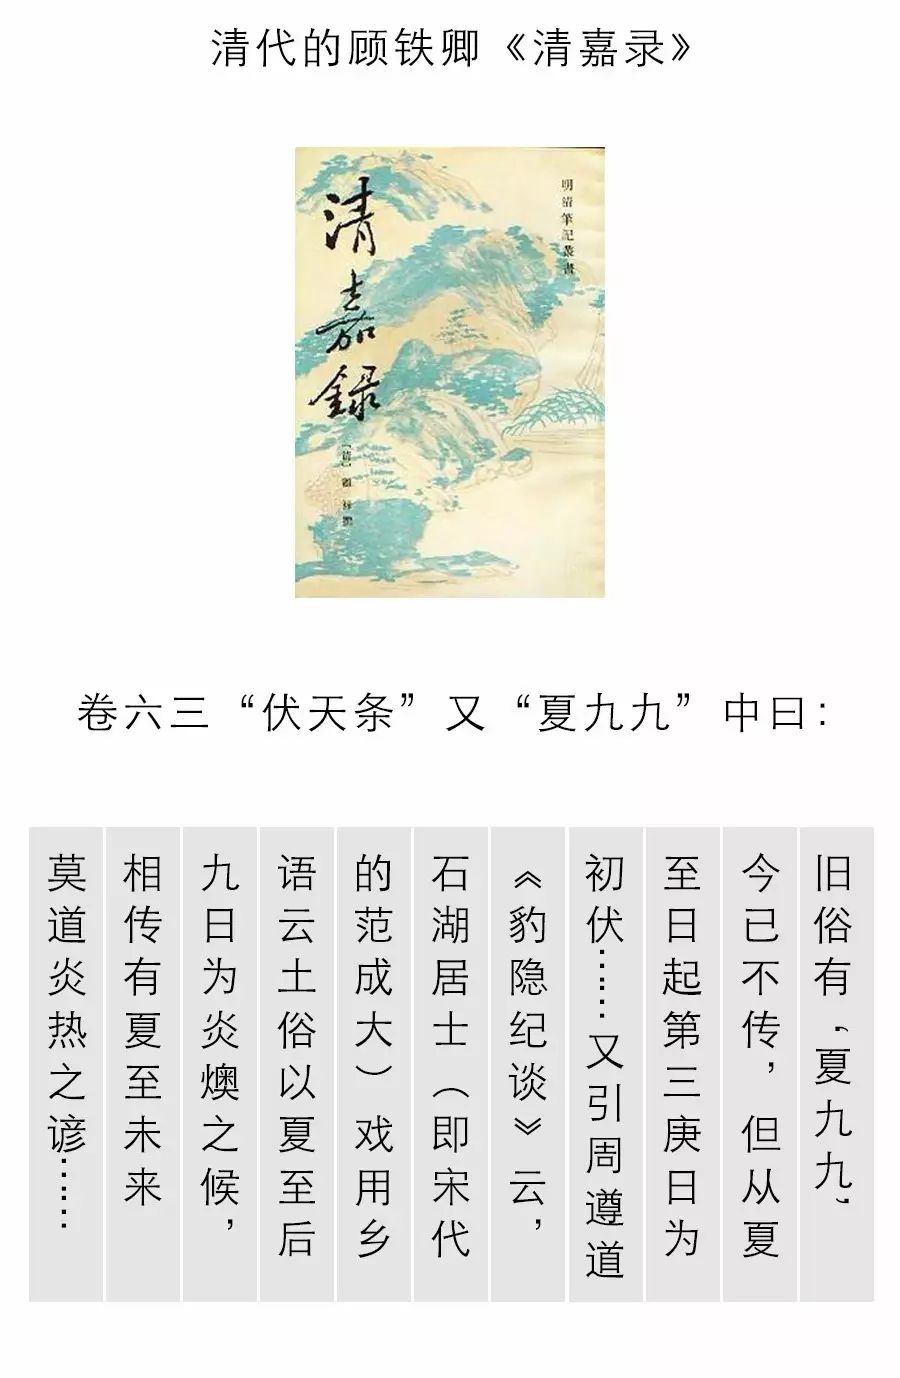 一座禹王庙正厅的榆木大梁上的《夏至九九歌》了,歌谣是用松烟墨写